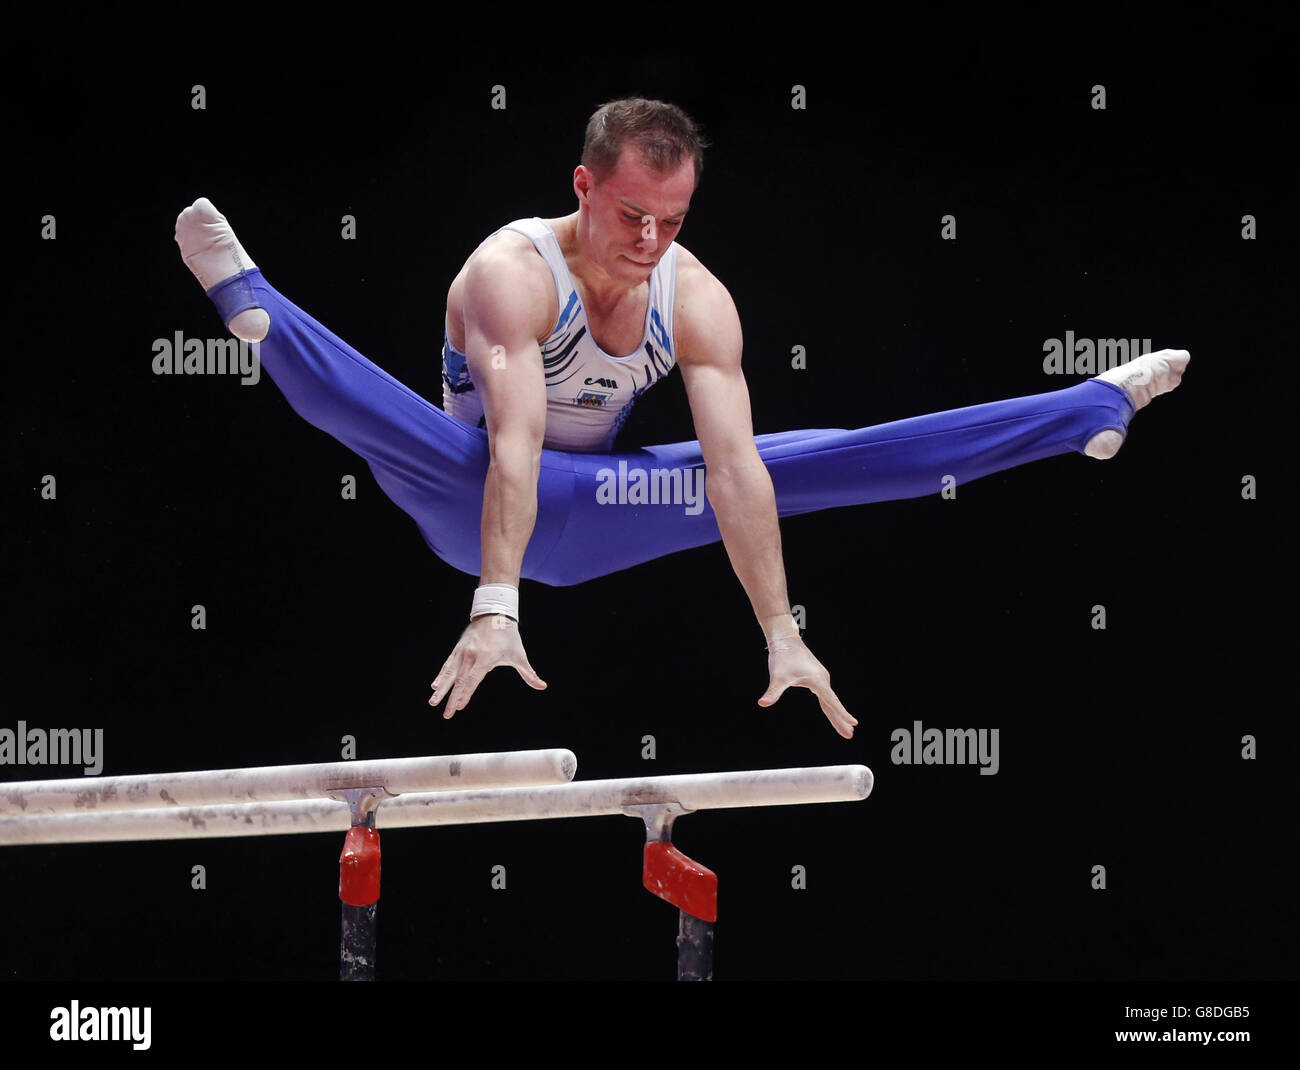 Der ukrainische Oleg Verniaiev tritt am vierten Tag der Weltmeisterschaften im Gymnastikbereich 2015 beim SSE Hydro, Glasgow, auf den Parallelbarren an. Stockfoto